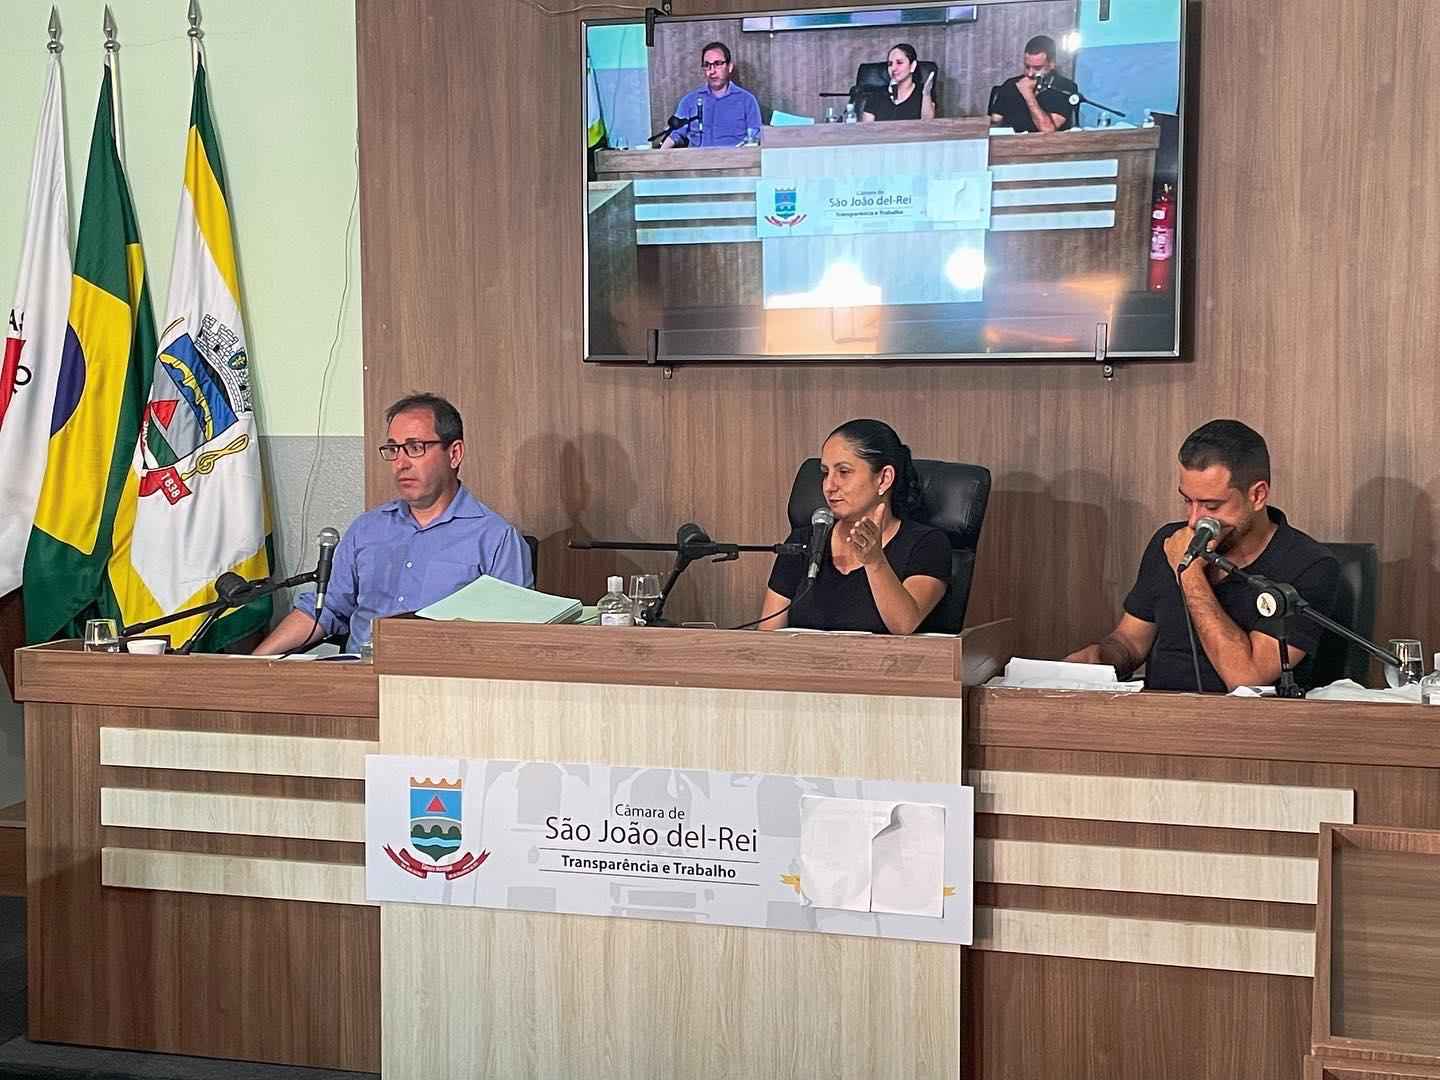 CPI dos Alimentos Vencidos é suspensa em São João del-Rei - foto: Arthur Raposo Gomes